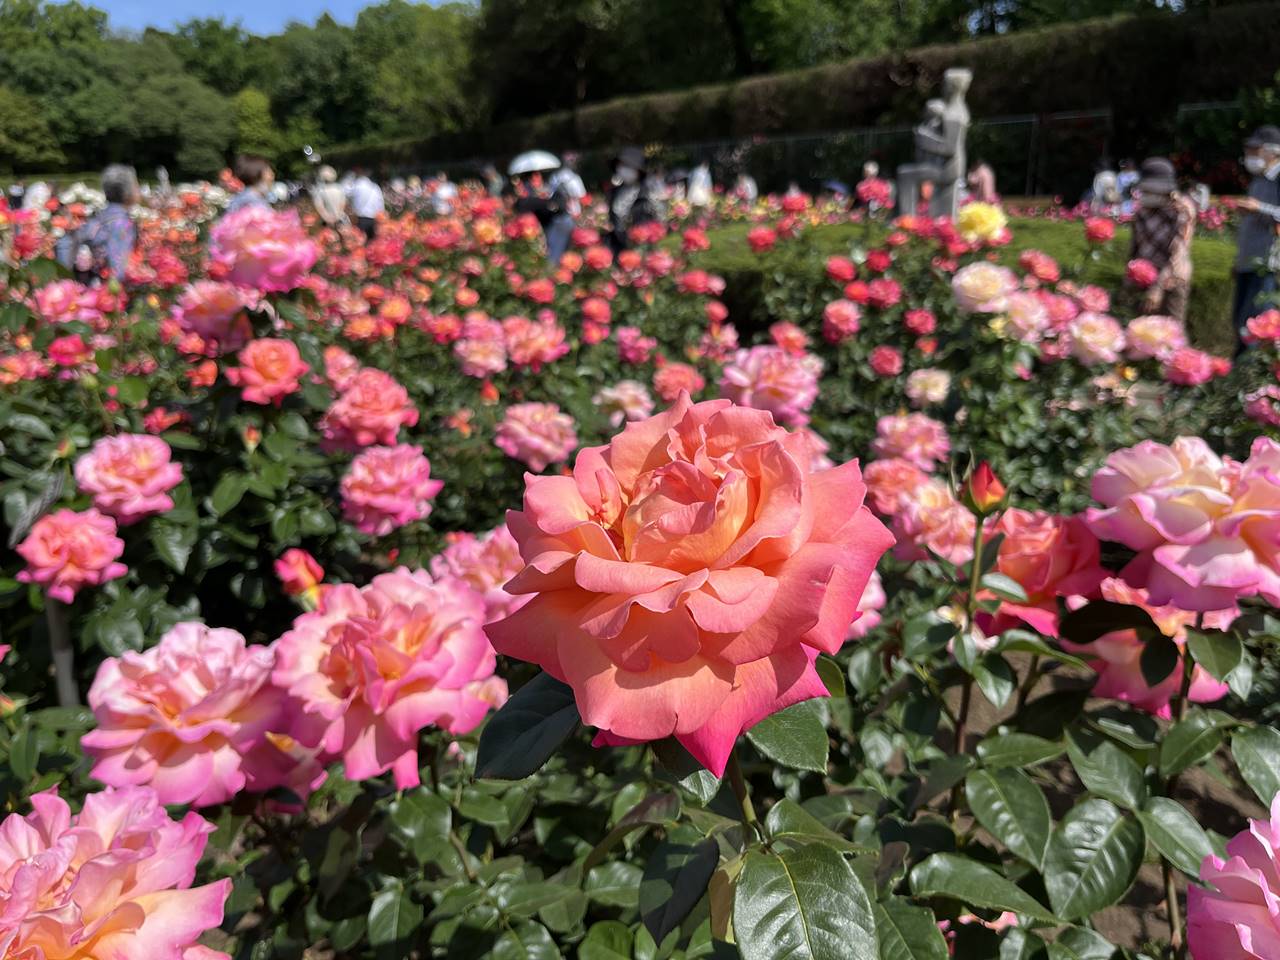 神代植物公園 満開のバラ園 見頃を迎えた多種多様な薔薇